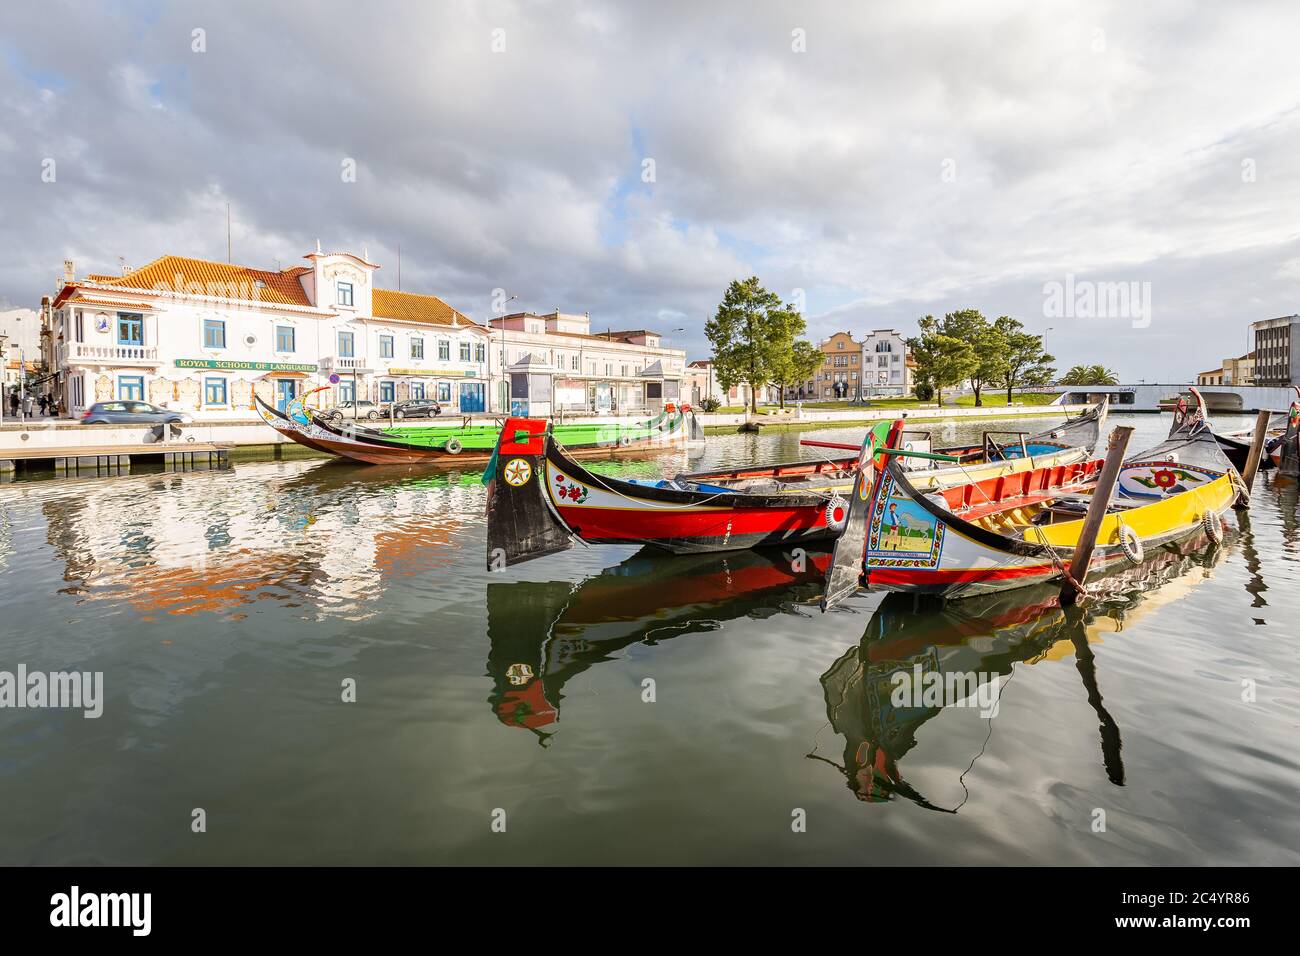 Les promenades en bateau Moliceiro colorées à Aveiro sont populaires auprès des touristes pour profiter de la vue sur les canaux charmants. Banque D'Images